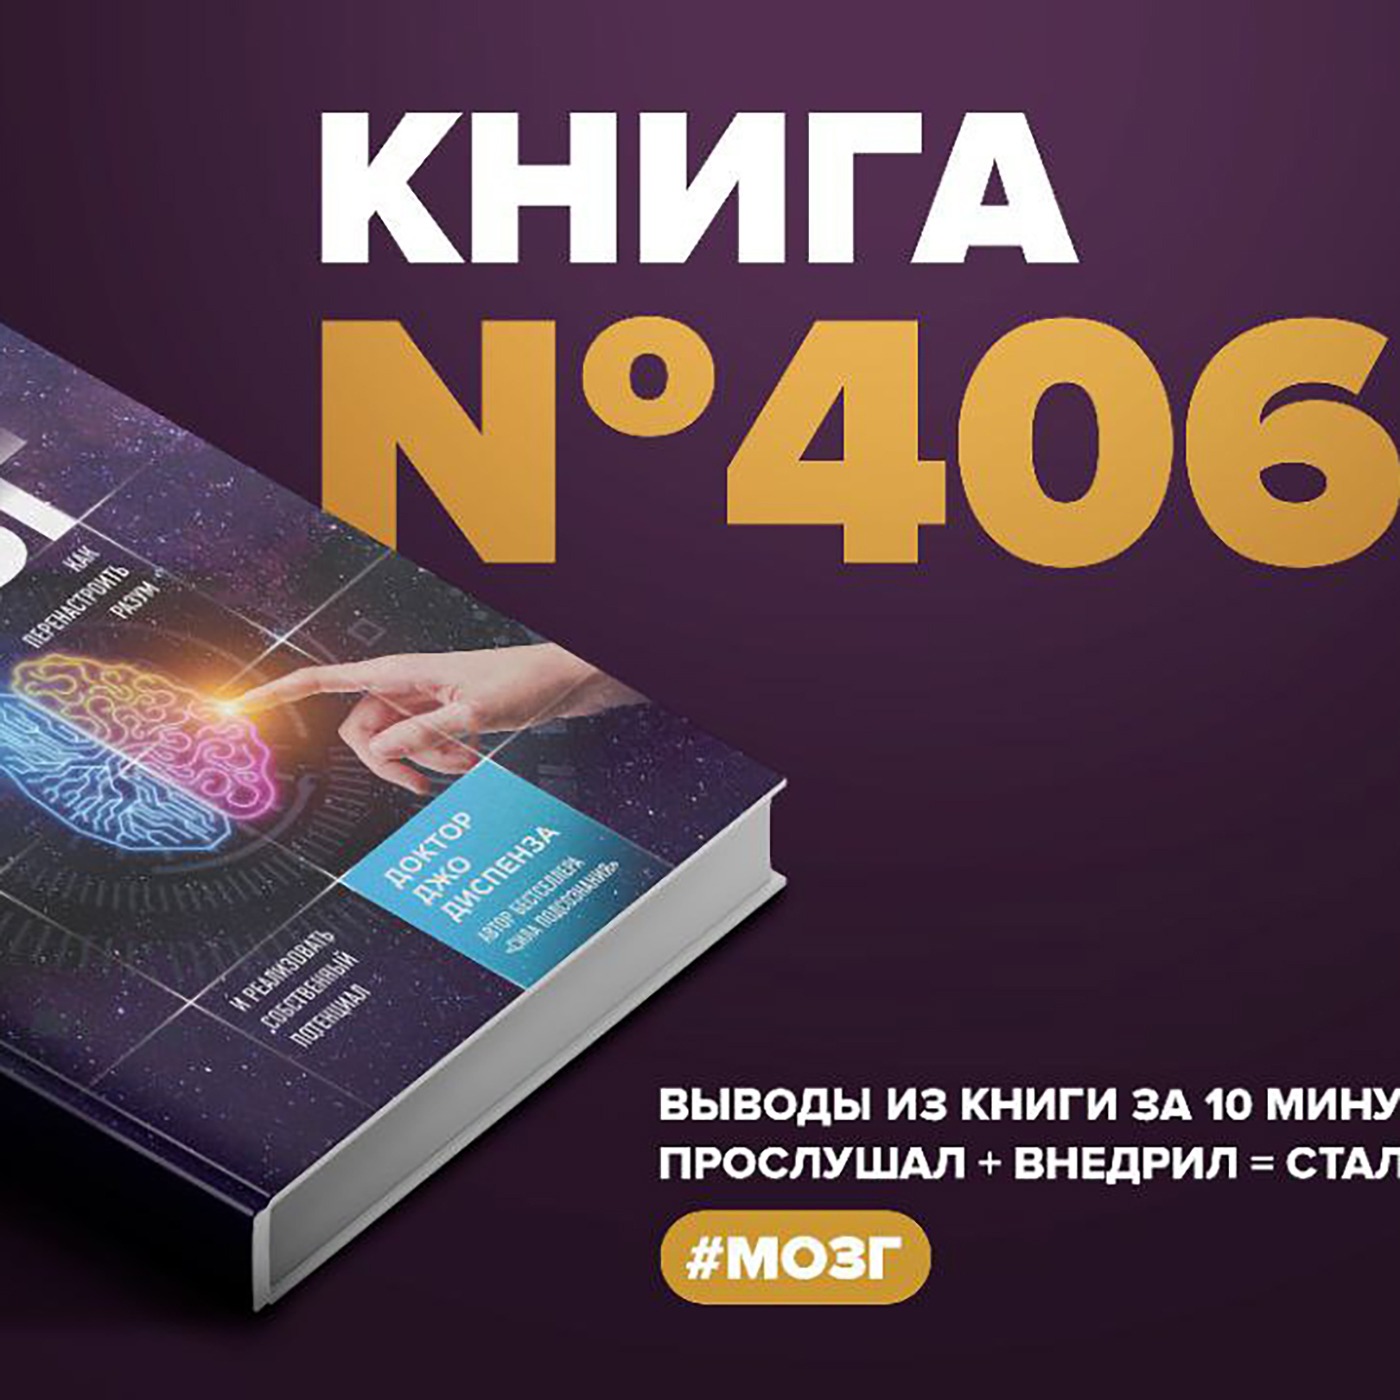 Книга #406  -  Развивай свой мозг. Как перенастроить разум и реализовать собственный потенциал.